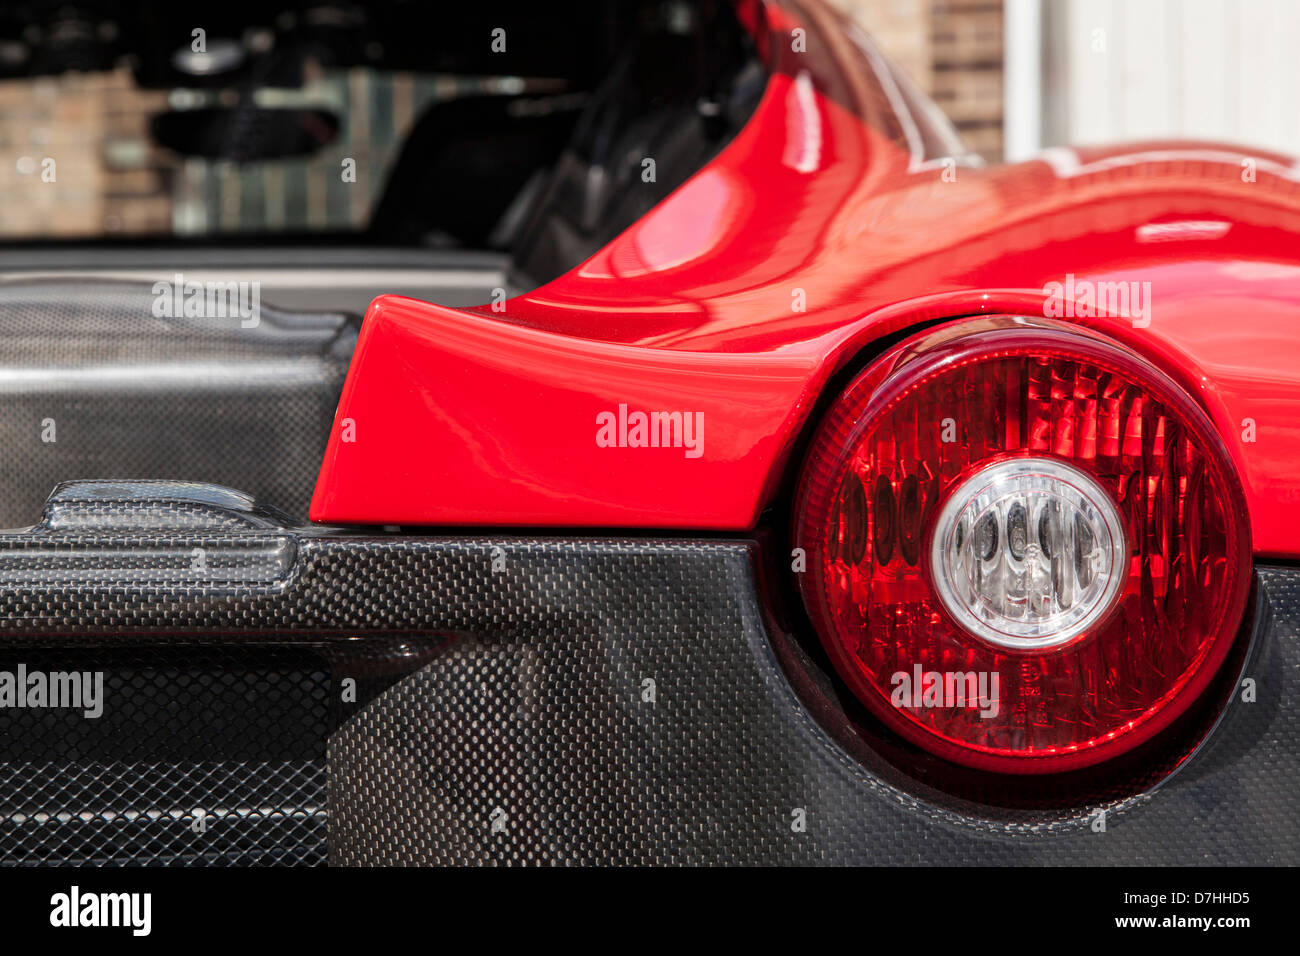 Brechen Sie Licht rechts, Ferrari 430 Scud, rot mit Carbon-Faser, offenen Boot. Rückspiegel. Stockfoto